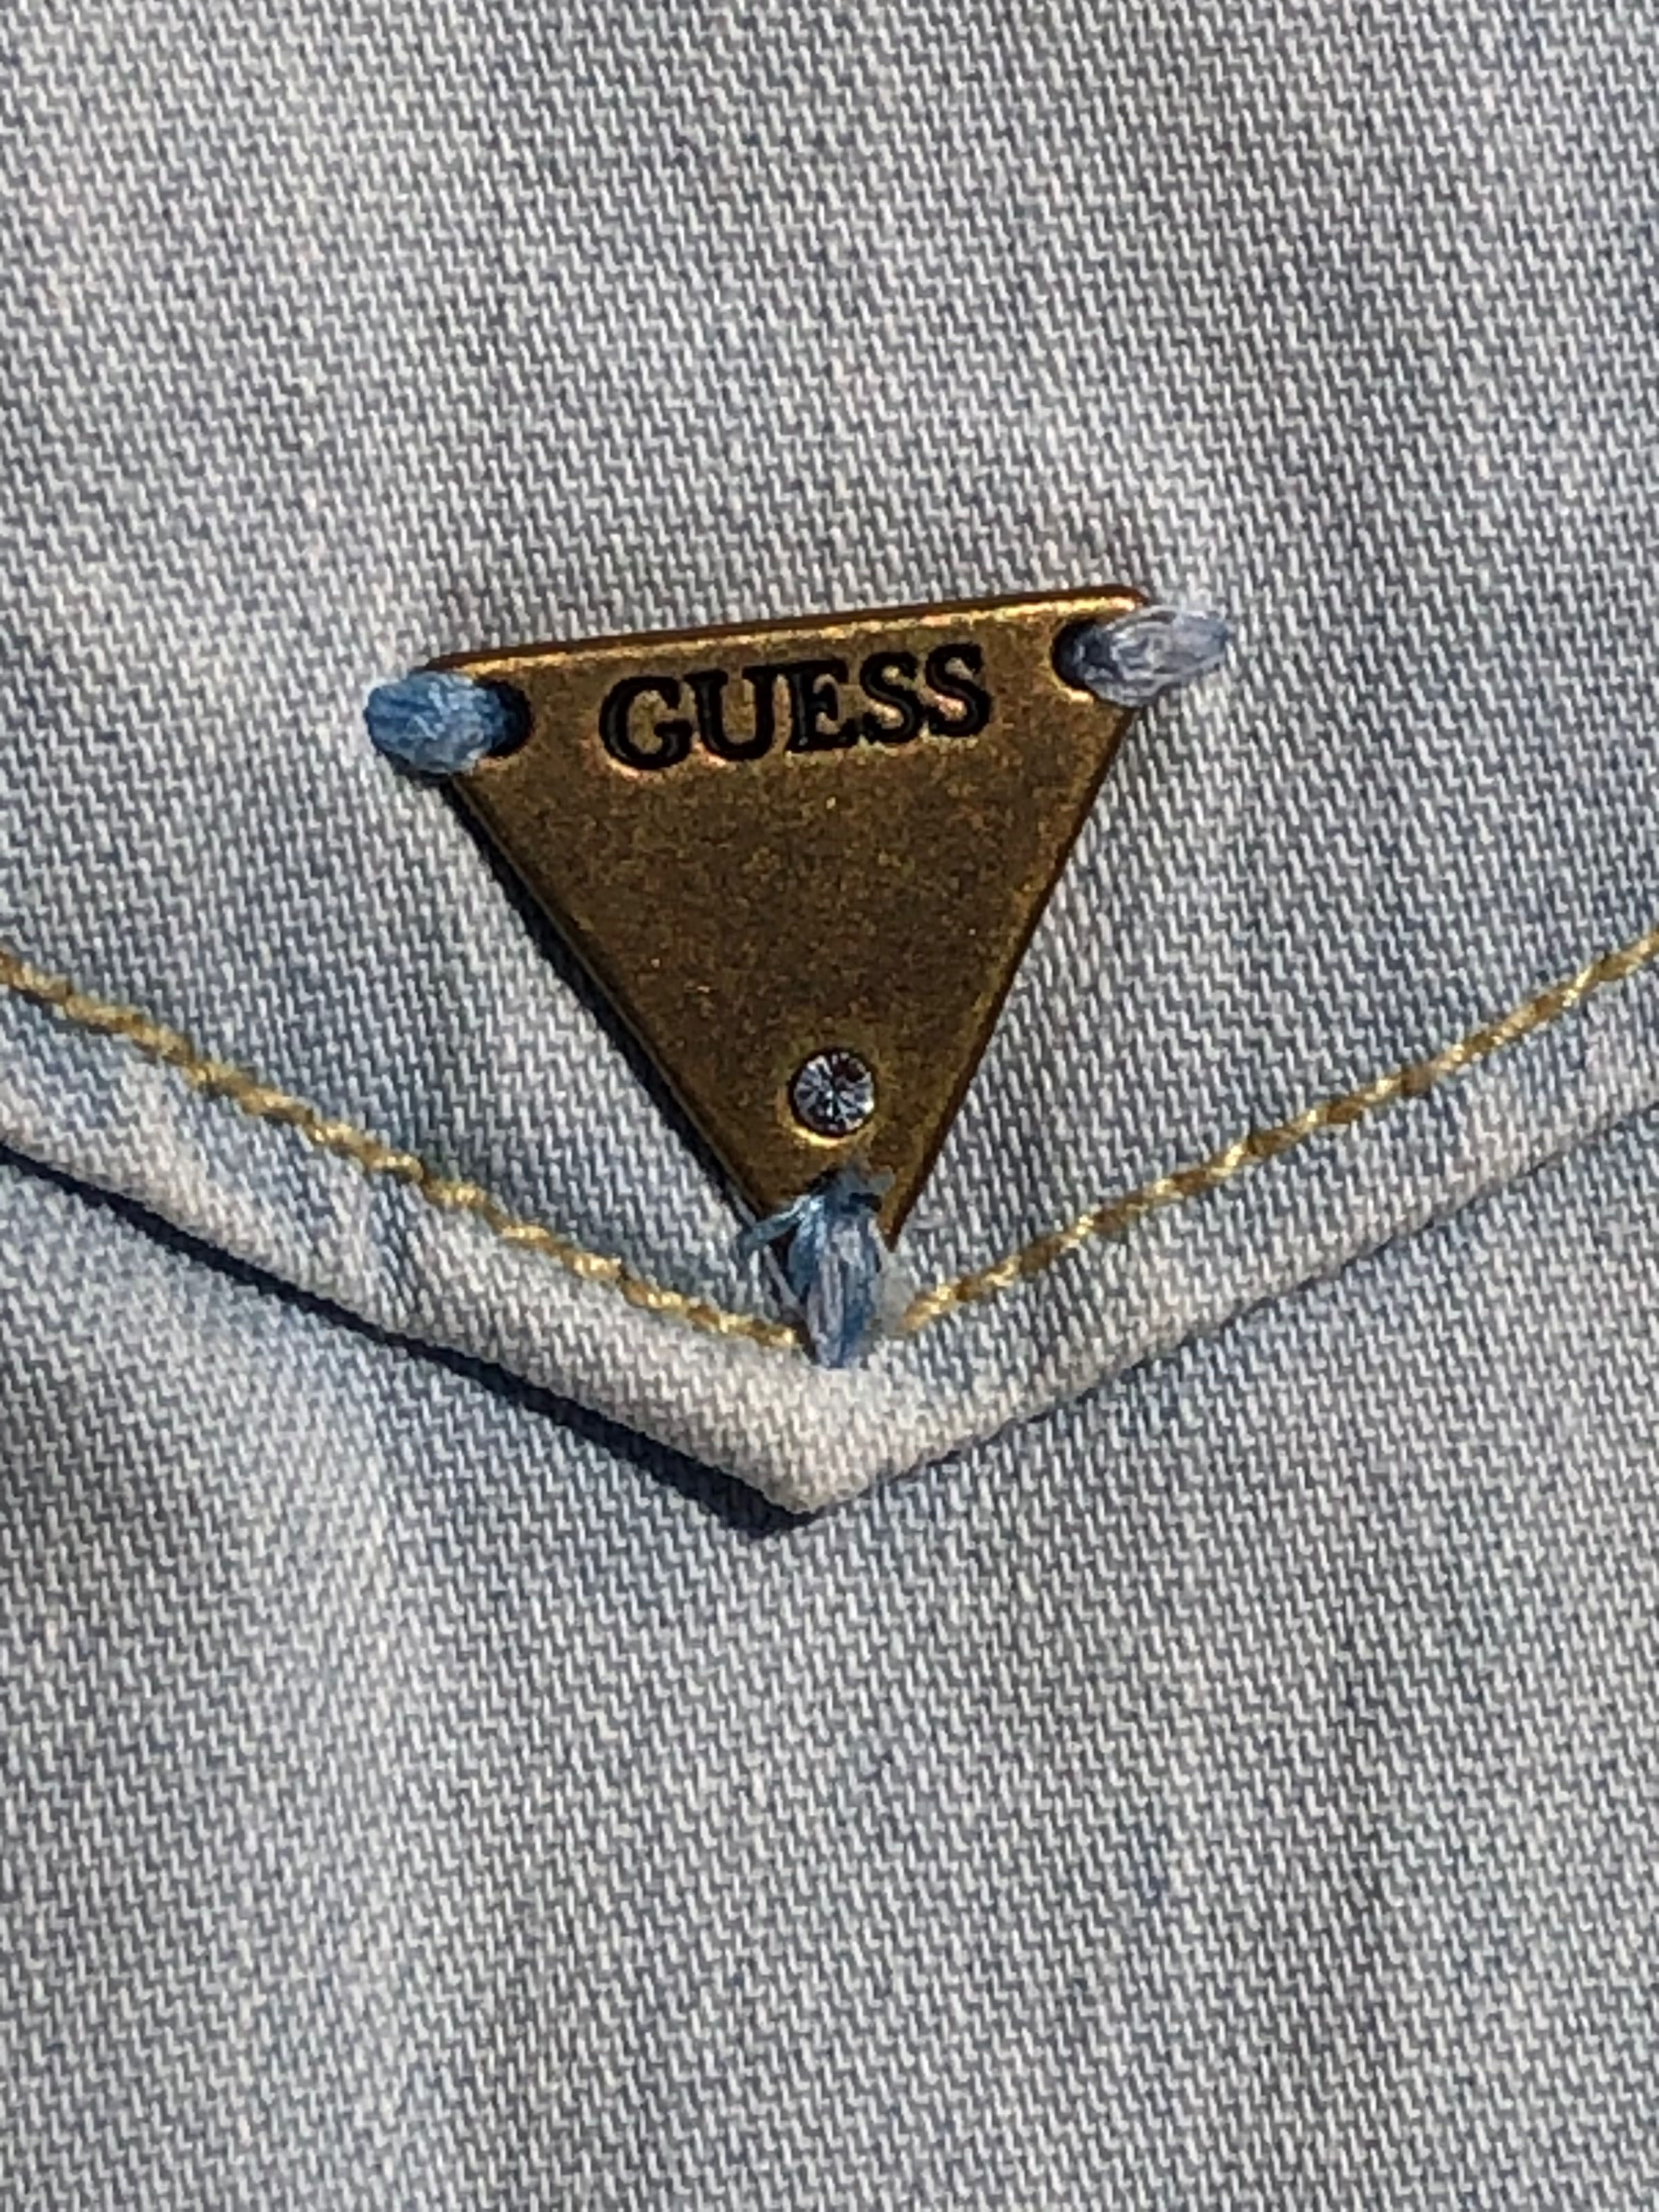 Guess koszula damska jeansowa M 38